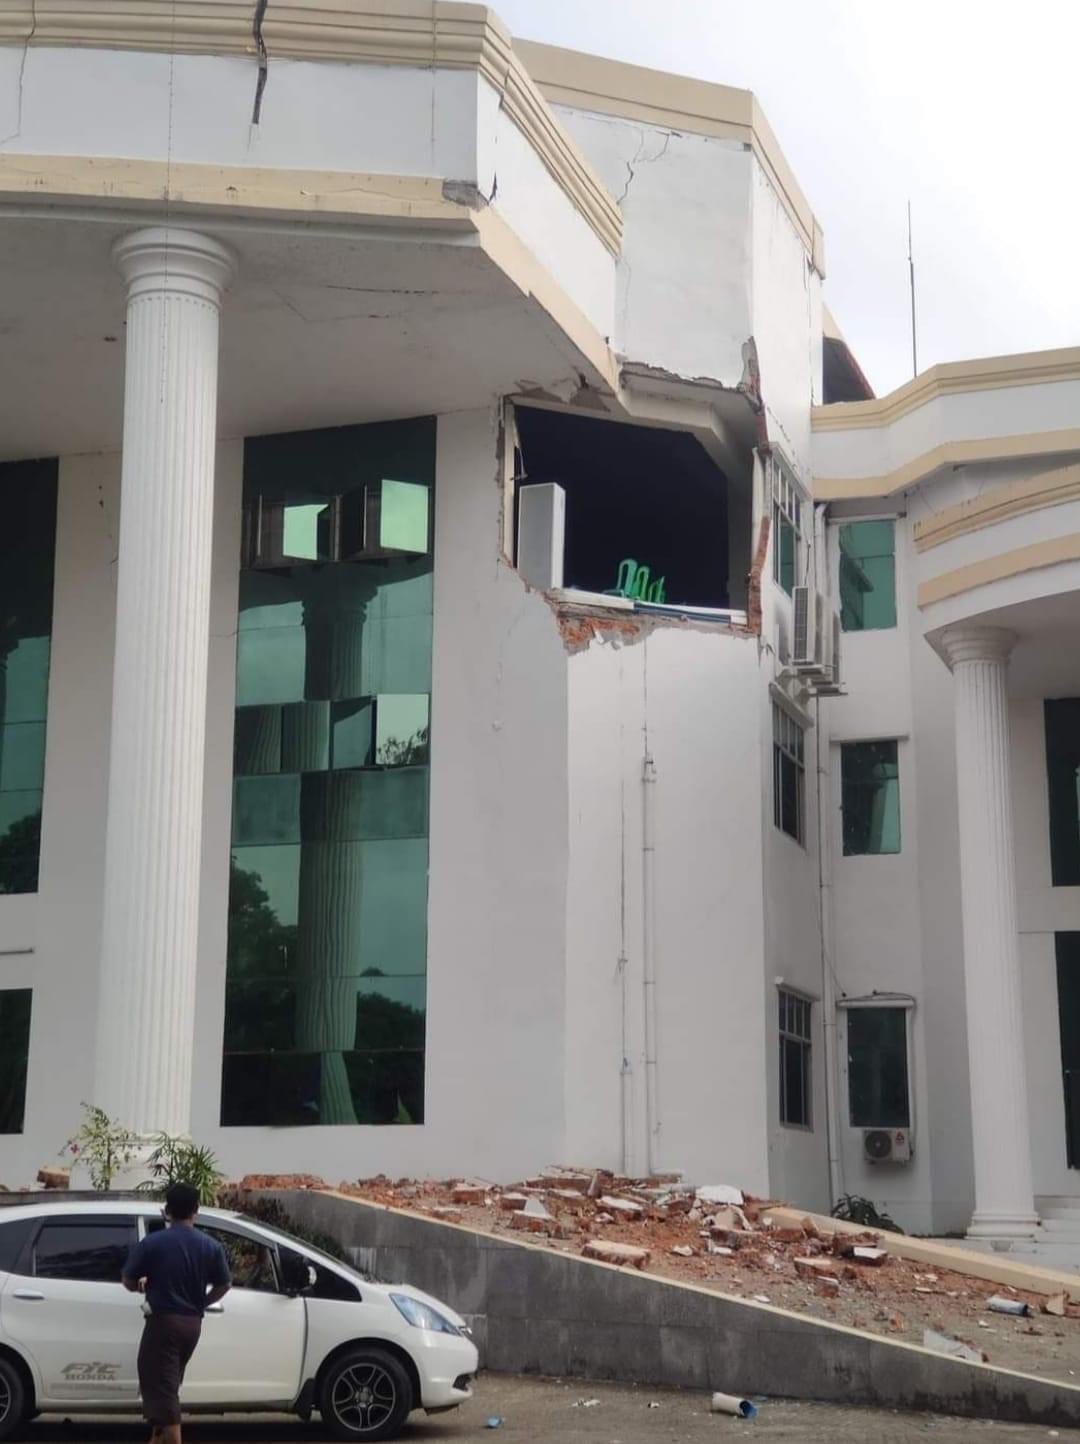 (ဇွန်လ ၇ရက်ကငလျင်ကြောင့်မအူပင်တက္ကသိုလ်အဆောက်အဦ ထိခိုက်ပျက်စီးမှု ၊မအူပင် မြို့ရှိ​​ရွှေဘုန်းမြင့်ဘုရား ထီး​တော်​ကွေးသွား​နေမှုနှင့် အုတ်တံတိုင်းပြိုကျစဥ်။ ဓါတ်ပုံ-CJ)